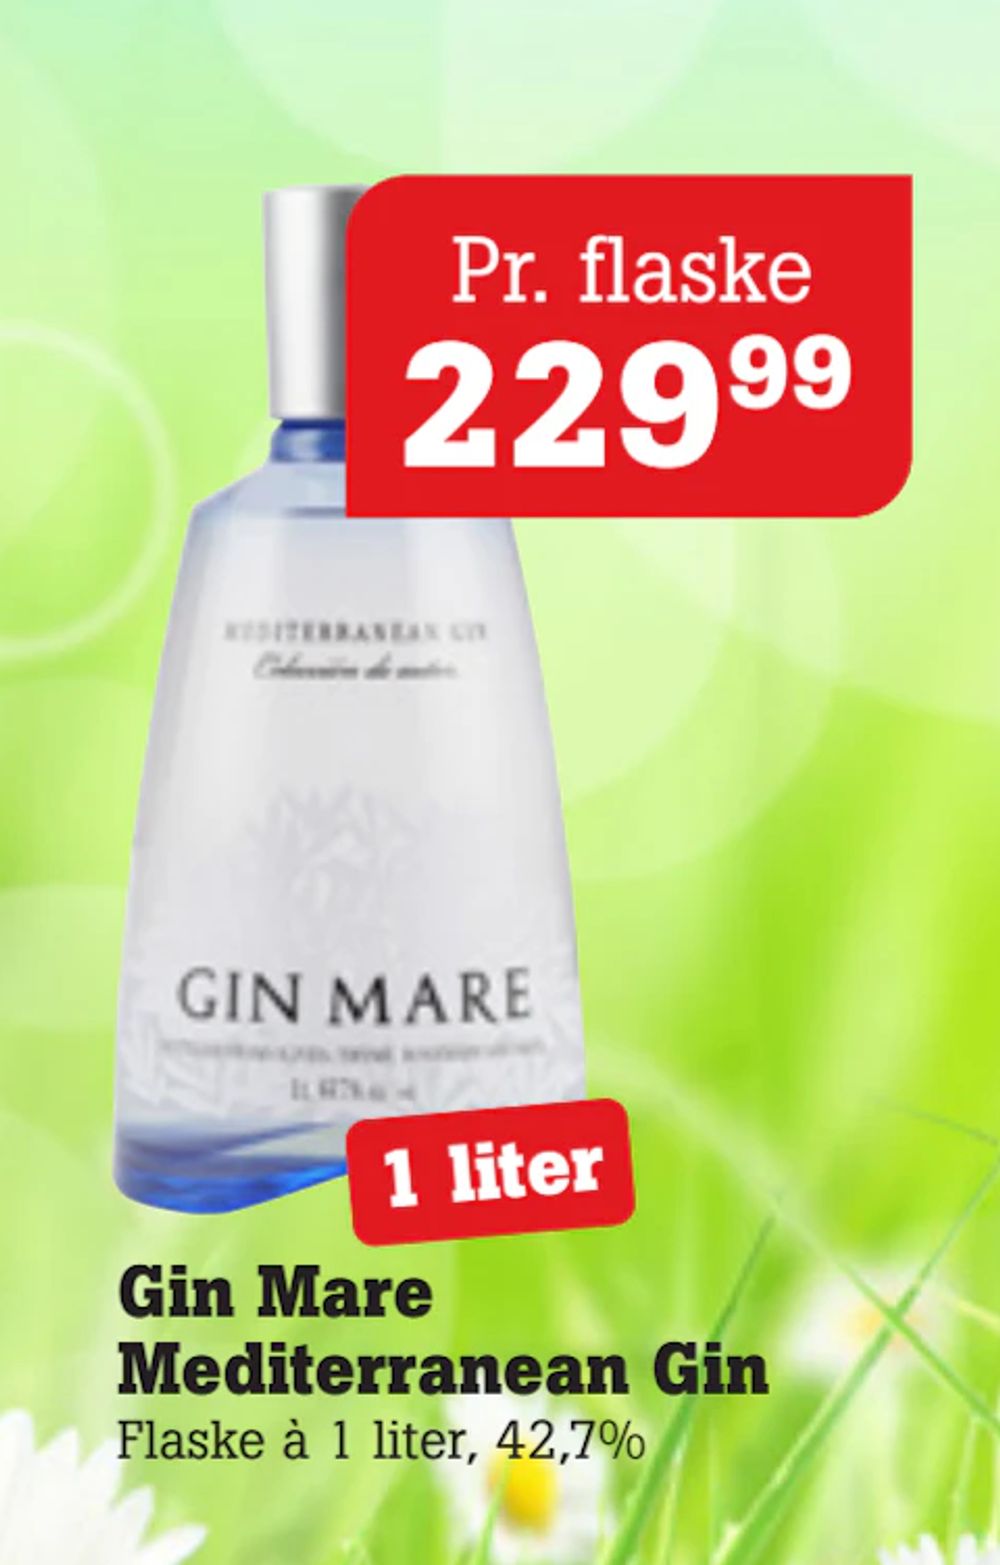 Tilbud på Gin Mare Mediterranean Gin fra Poetzsch Padborg til 229,99 kr.